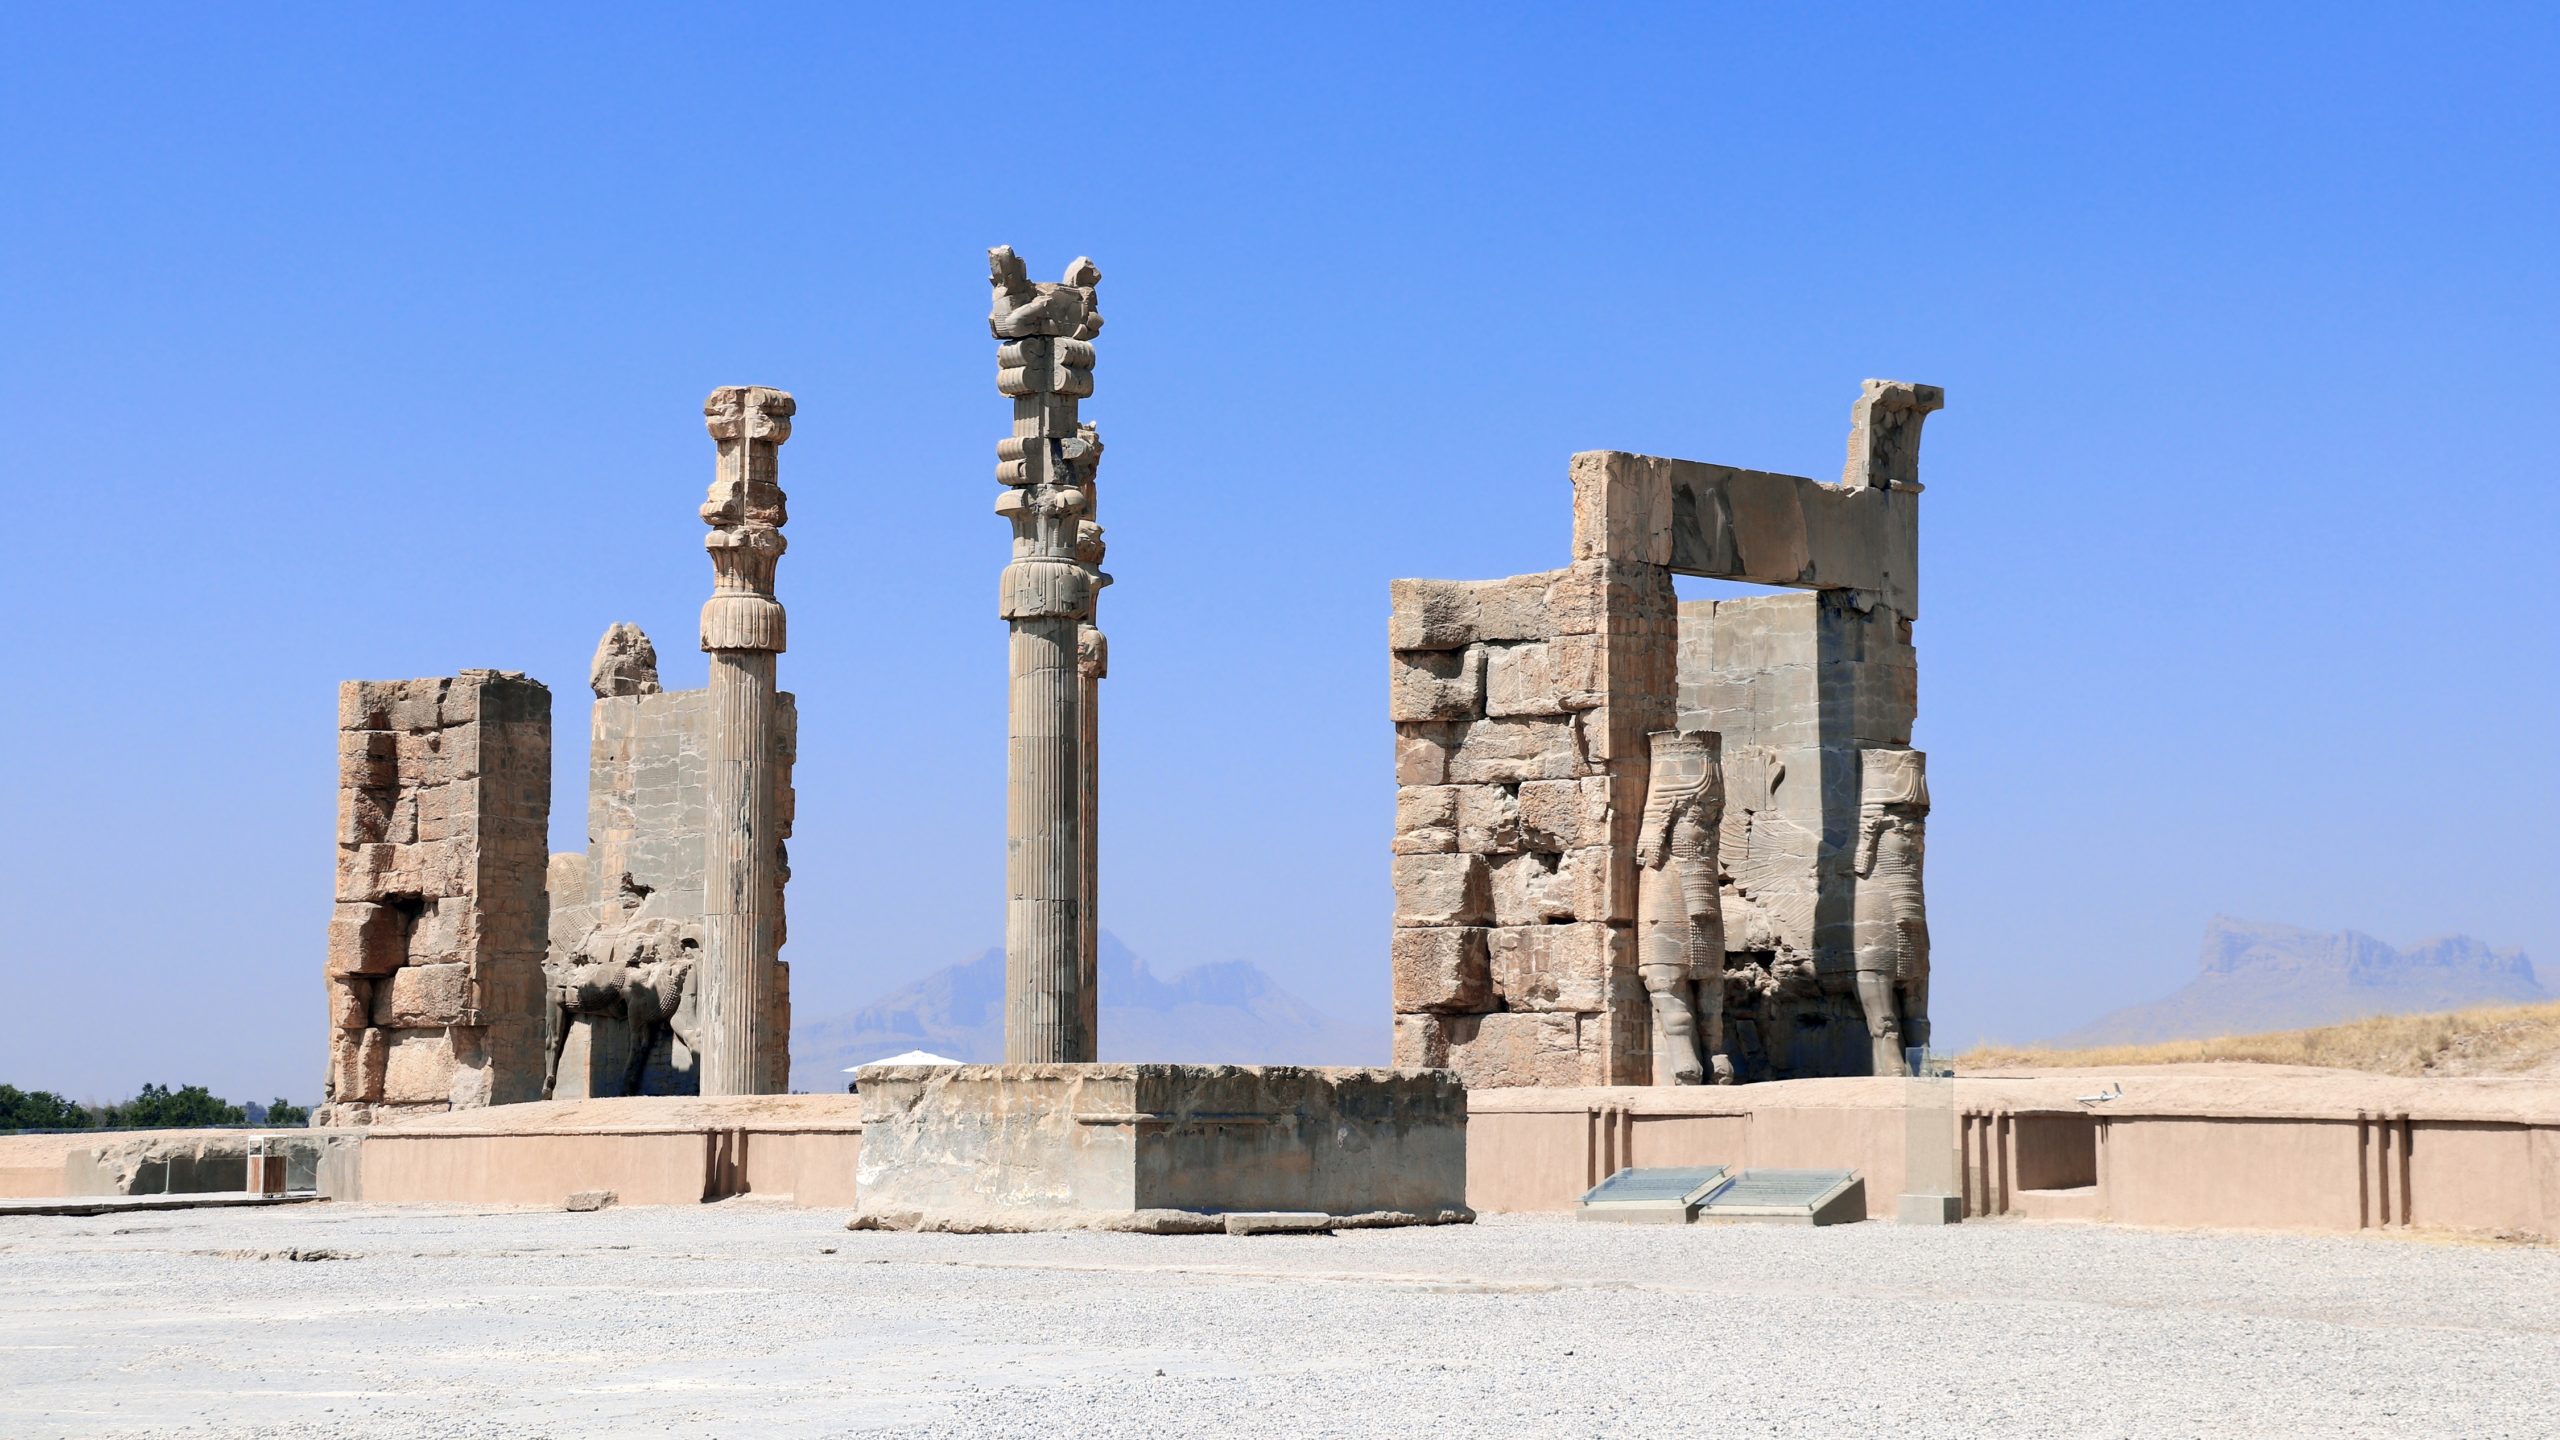 古代文明 アッシュル ペルセポリス 世界遺産検定を取得するブログ